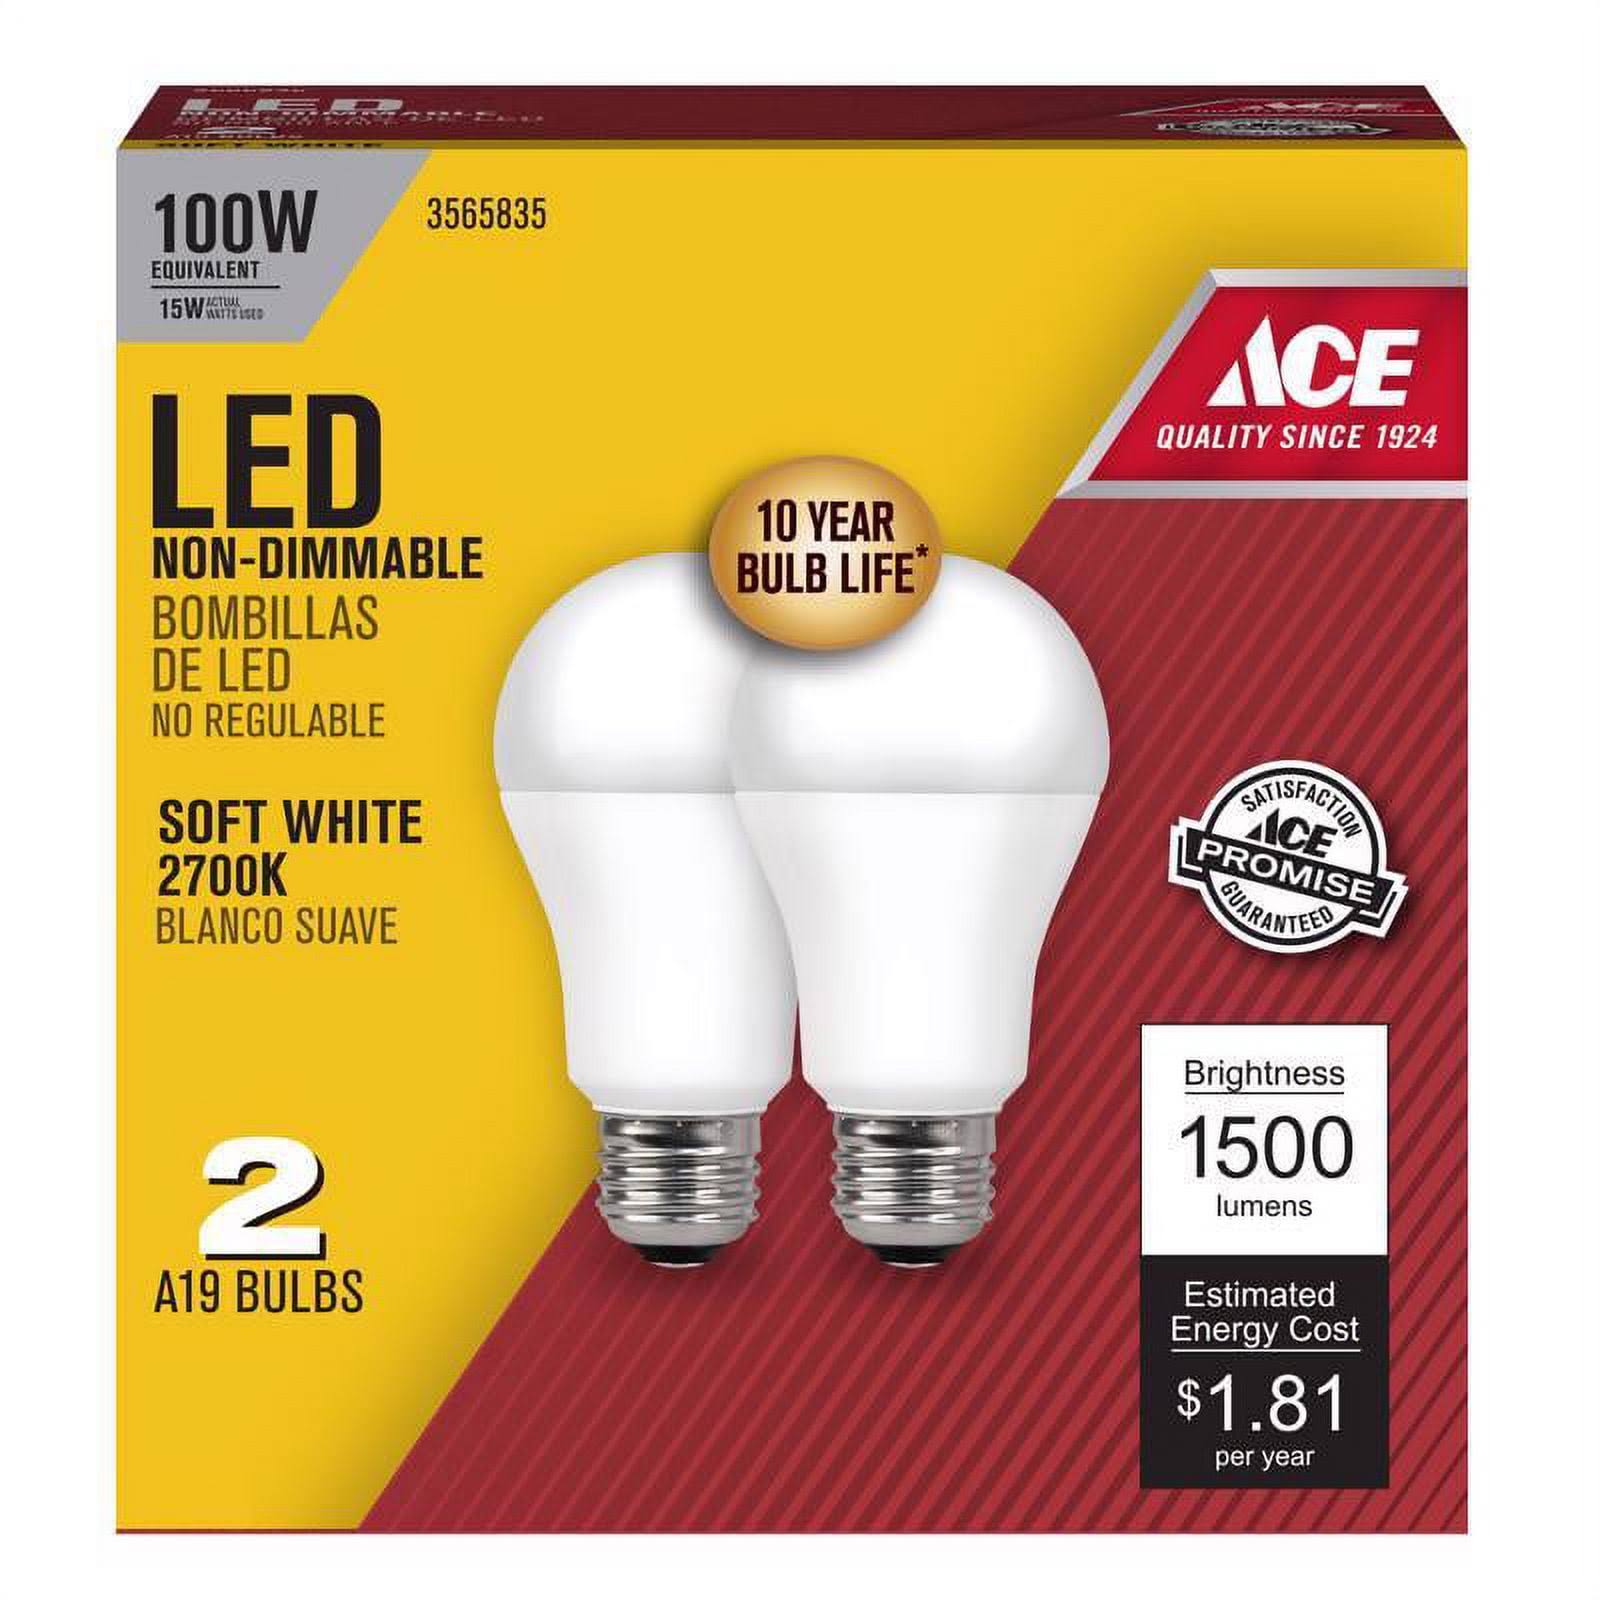 Ace A19 LED Bulb - Soft White, 100W